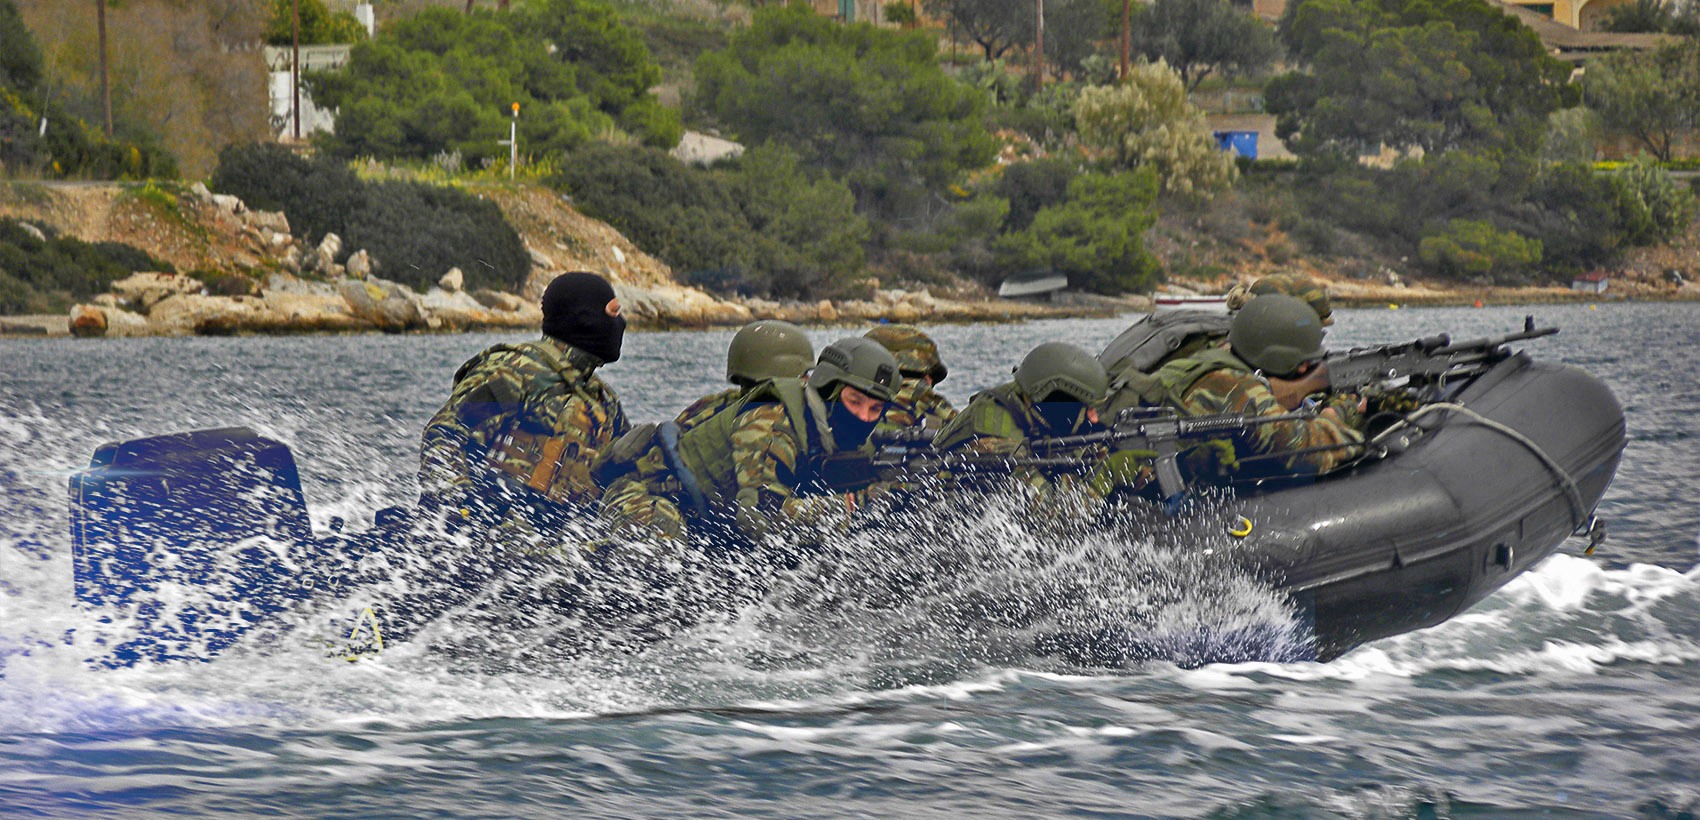 Tα «9» σενάρια ελληνικής στρατιωτικής κινητοποίησης που μελετά η Αθήνα εν όψει Σεπτεμβρίου